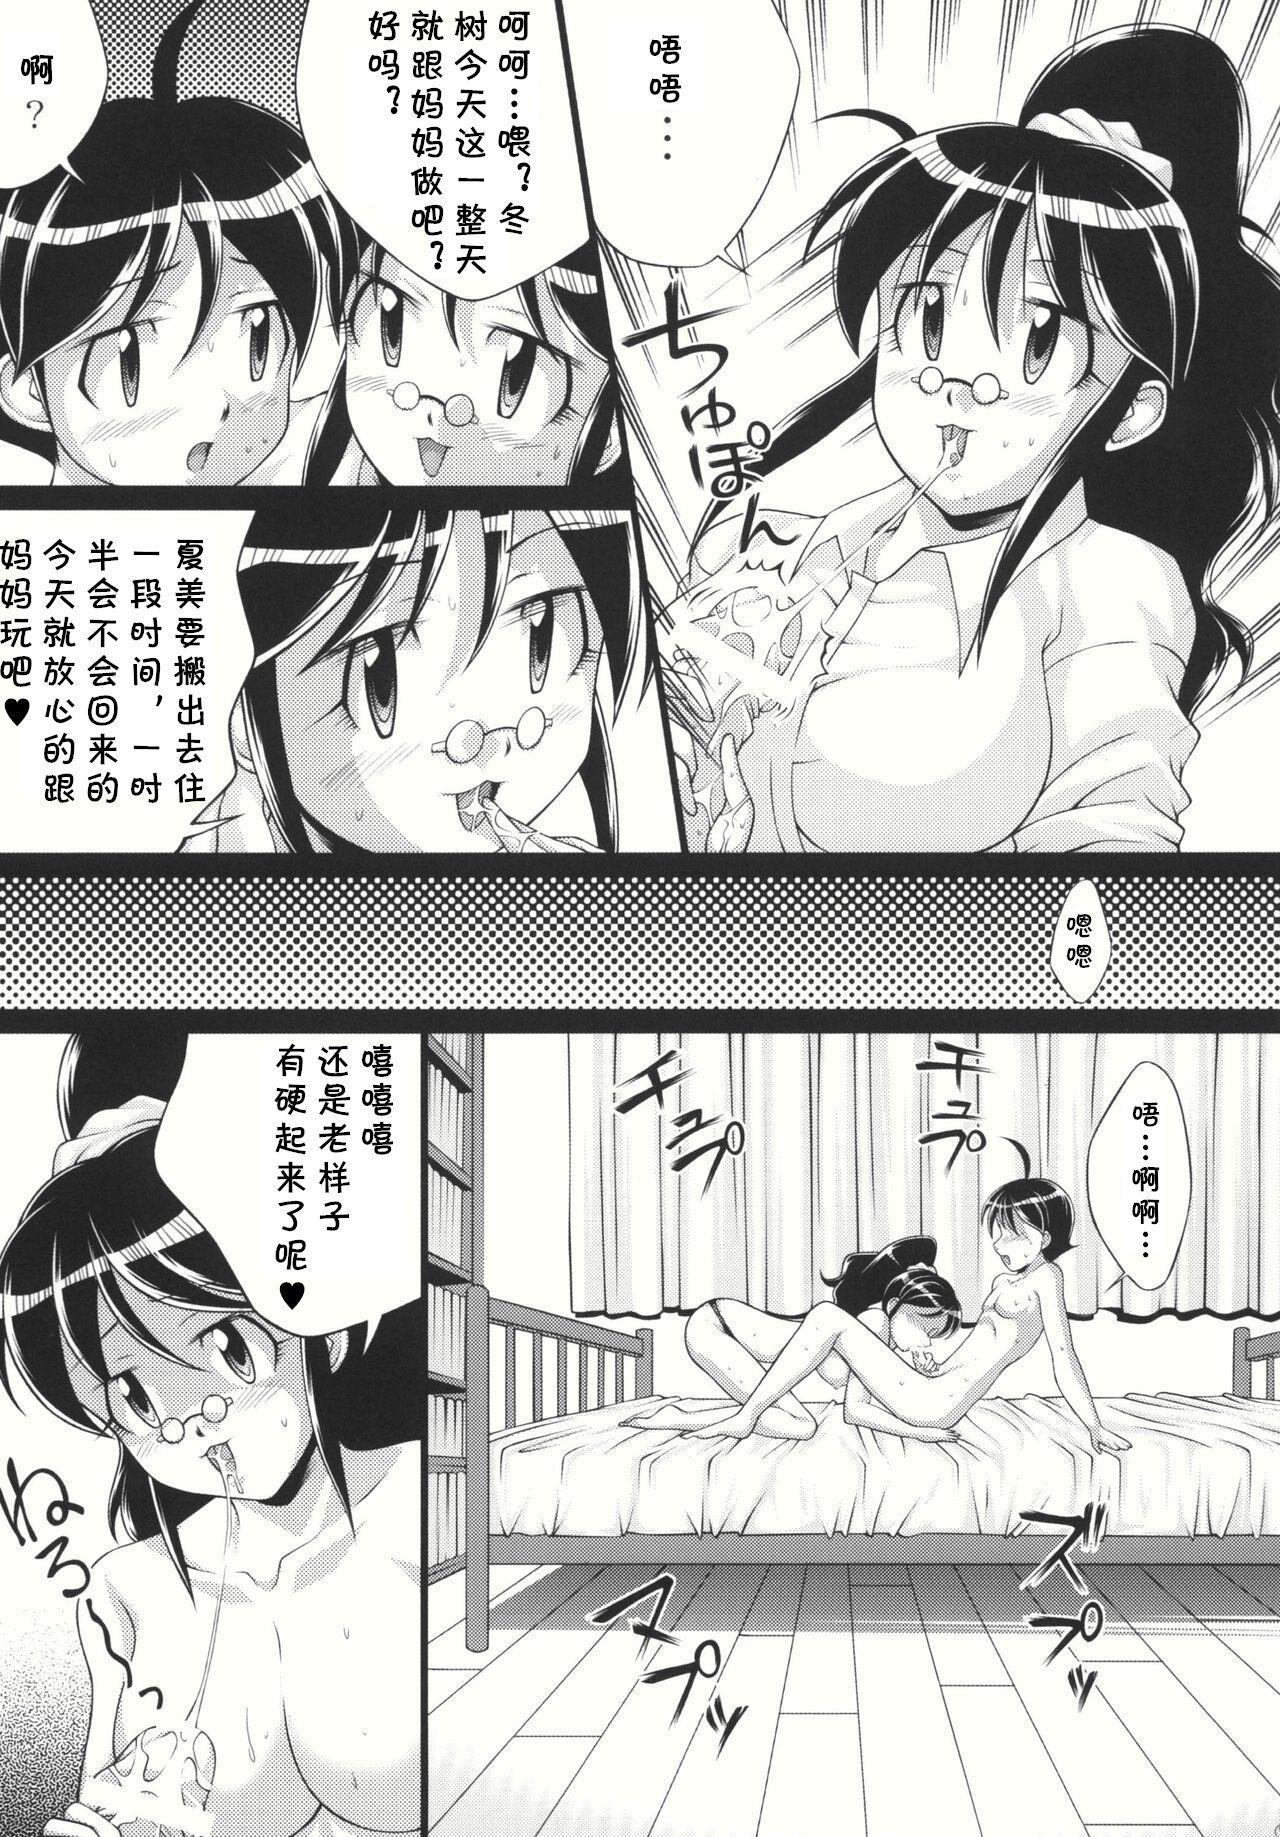 Bunduda Chikyuujin Maruhi Seitai Chousa Houkokusho 4 - Keroro gunsou | sgt. frog Asshole - Page 9